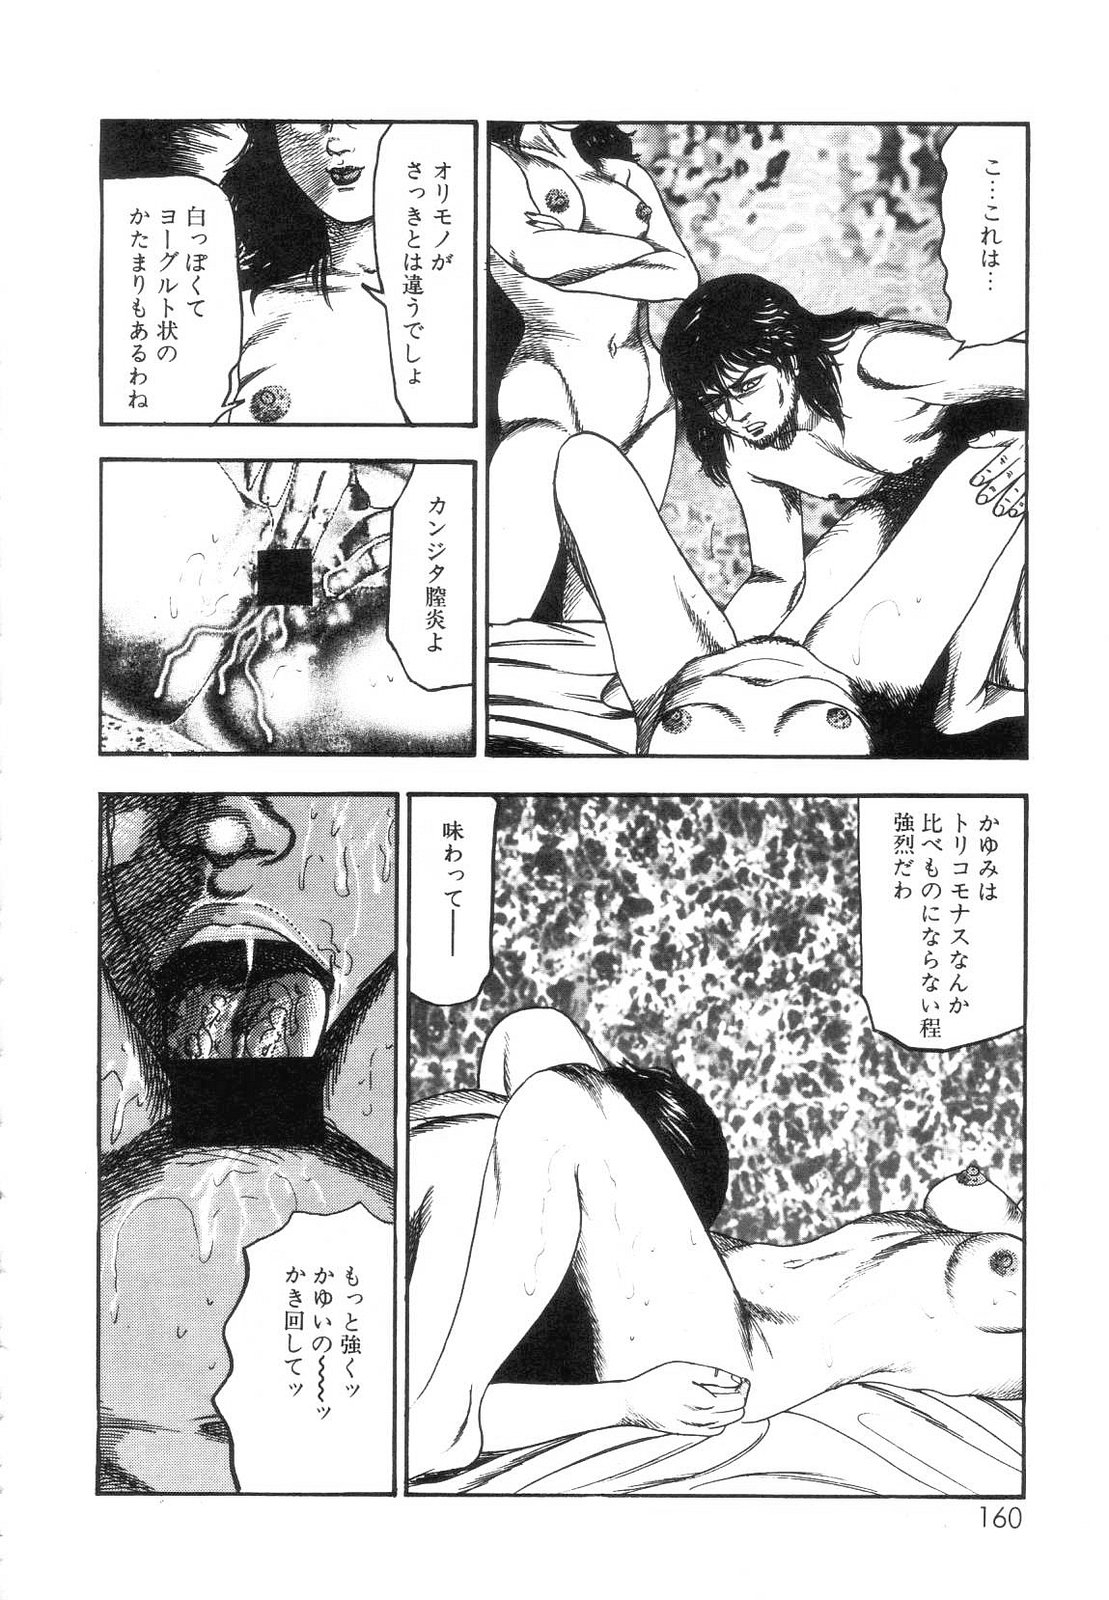 [Sanjou Tomomi] Shiro no Mokushiroku Vol. 7 - Shiiku Ningyou Erika no Shou 161